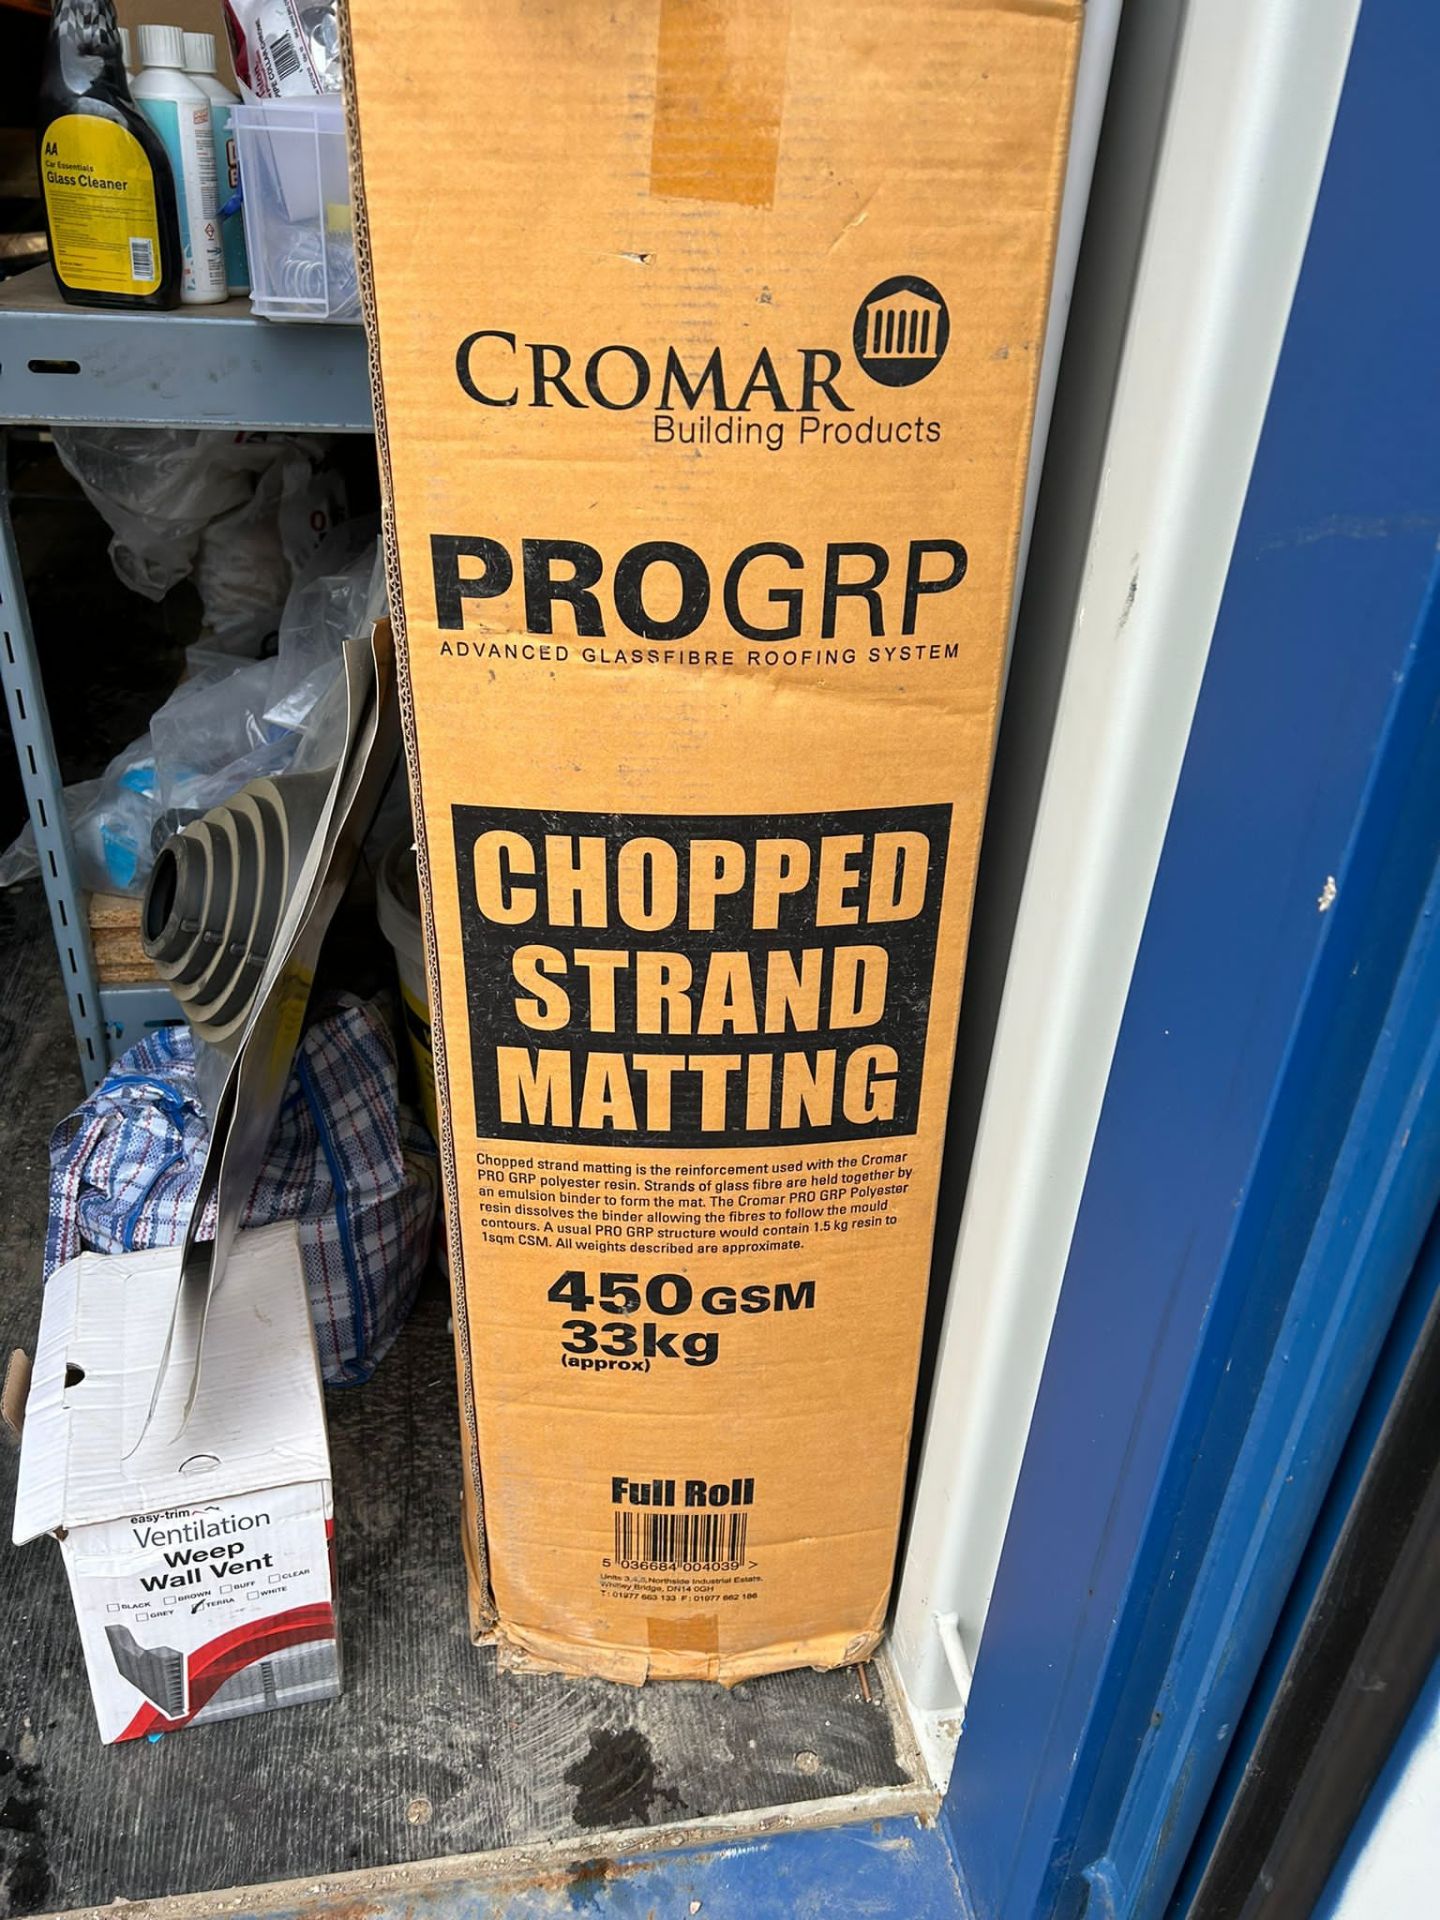 Matting Roll Cromar Pro grip matting 450gsm 33kg - Image 2 of 4